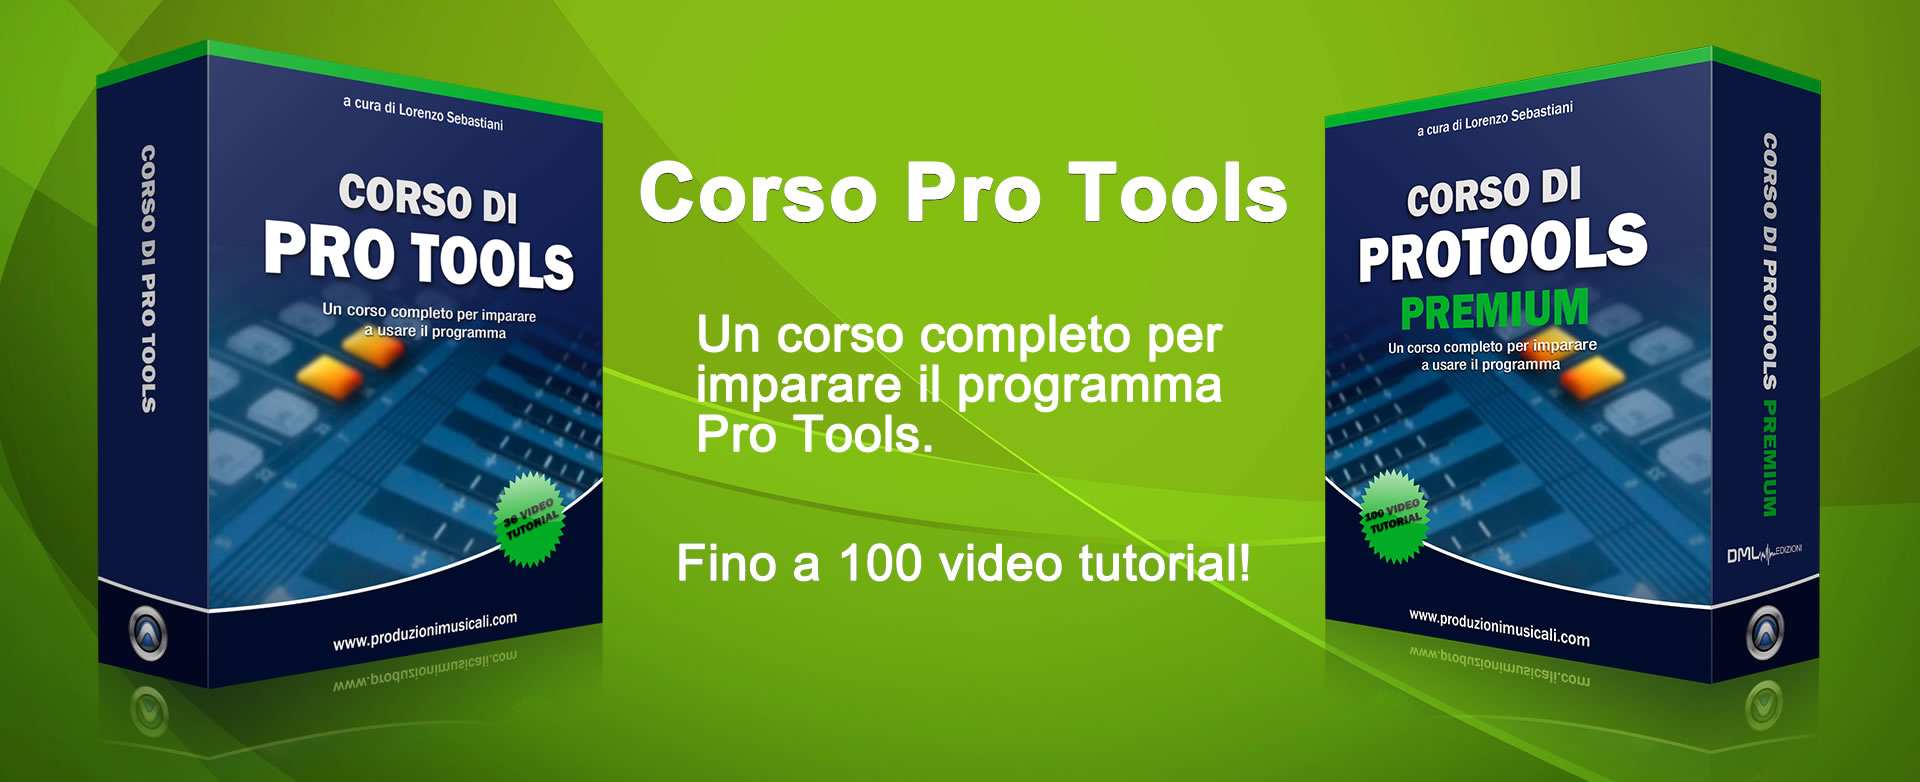 Corso Pro Tools